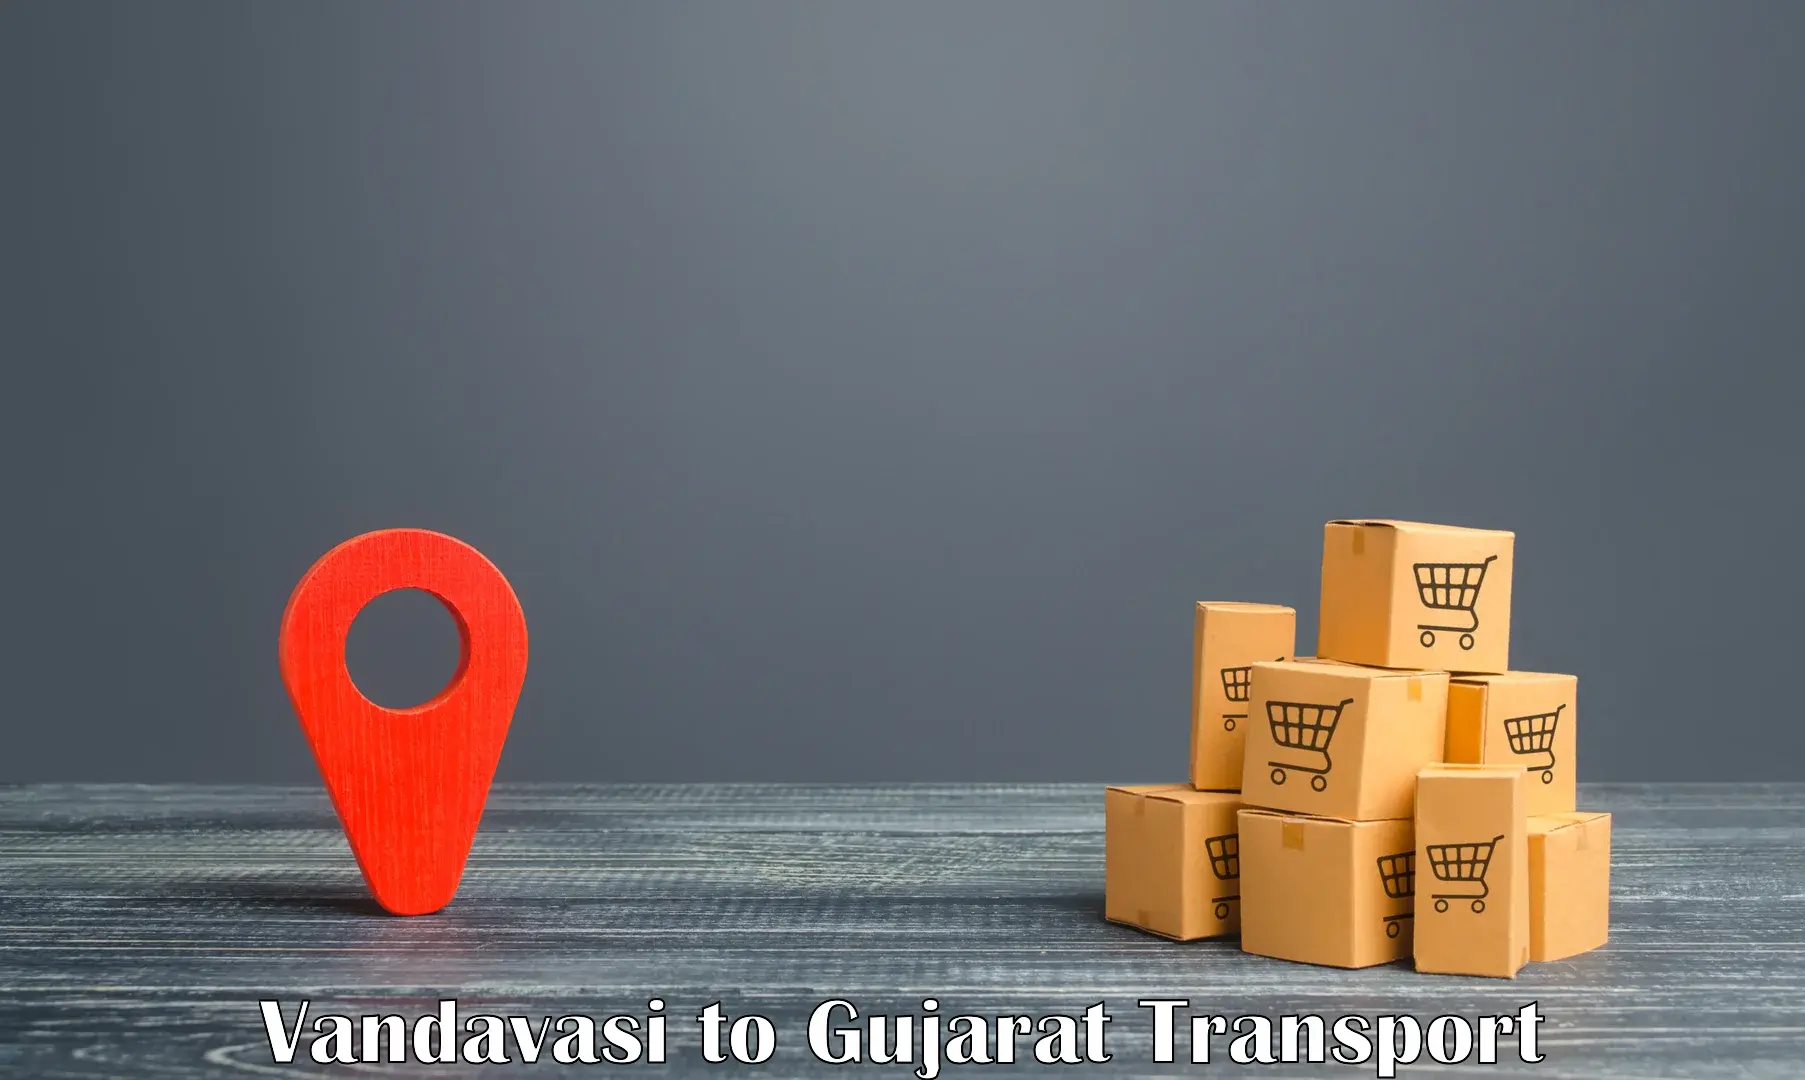 Nationwide transport services Vandavasi to IIIT Surat